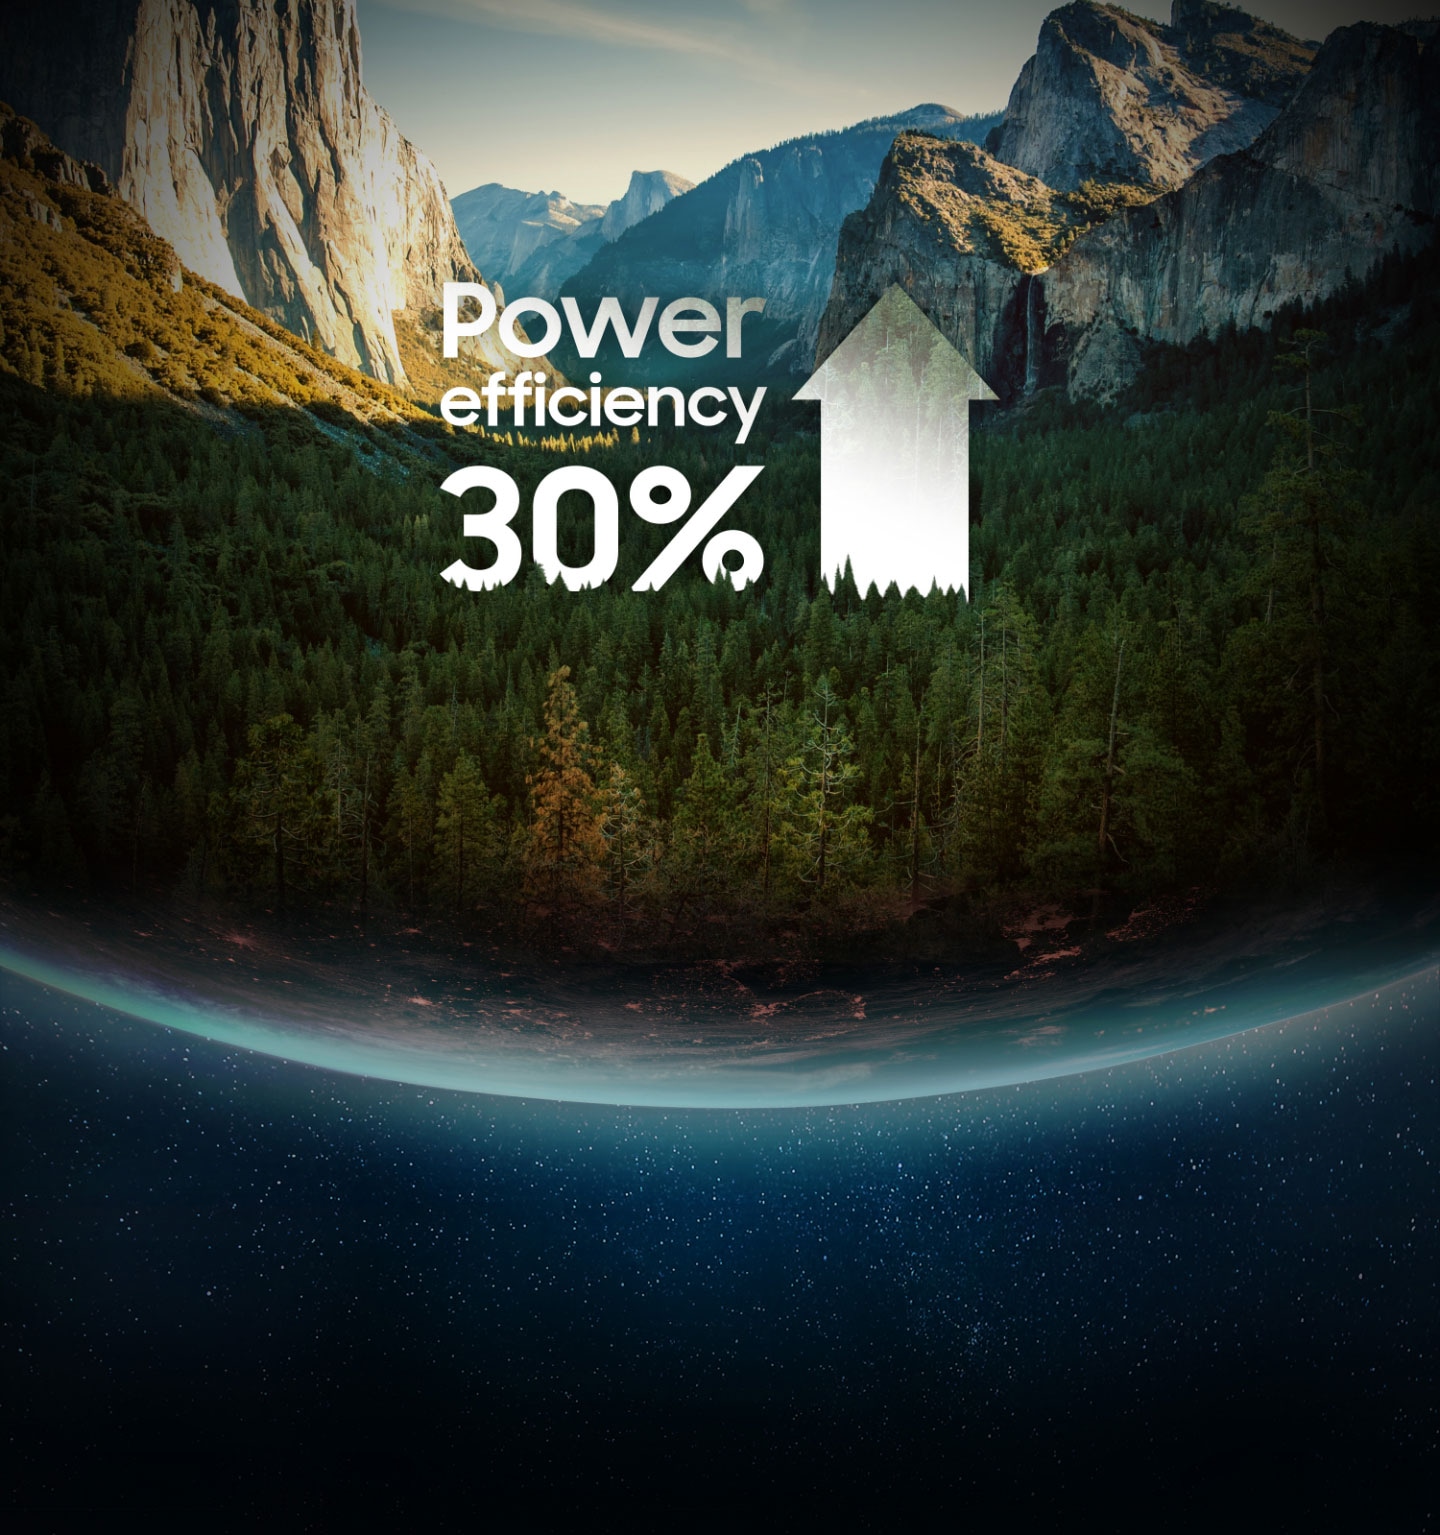 지구의 나무, 산과 '최대 전력 효율 30 %'란 글이 함께 있는 이미지